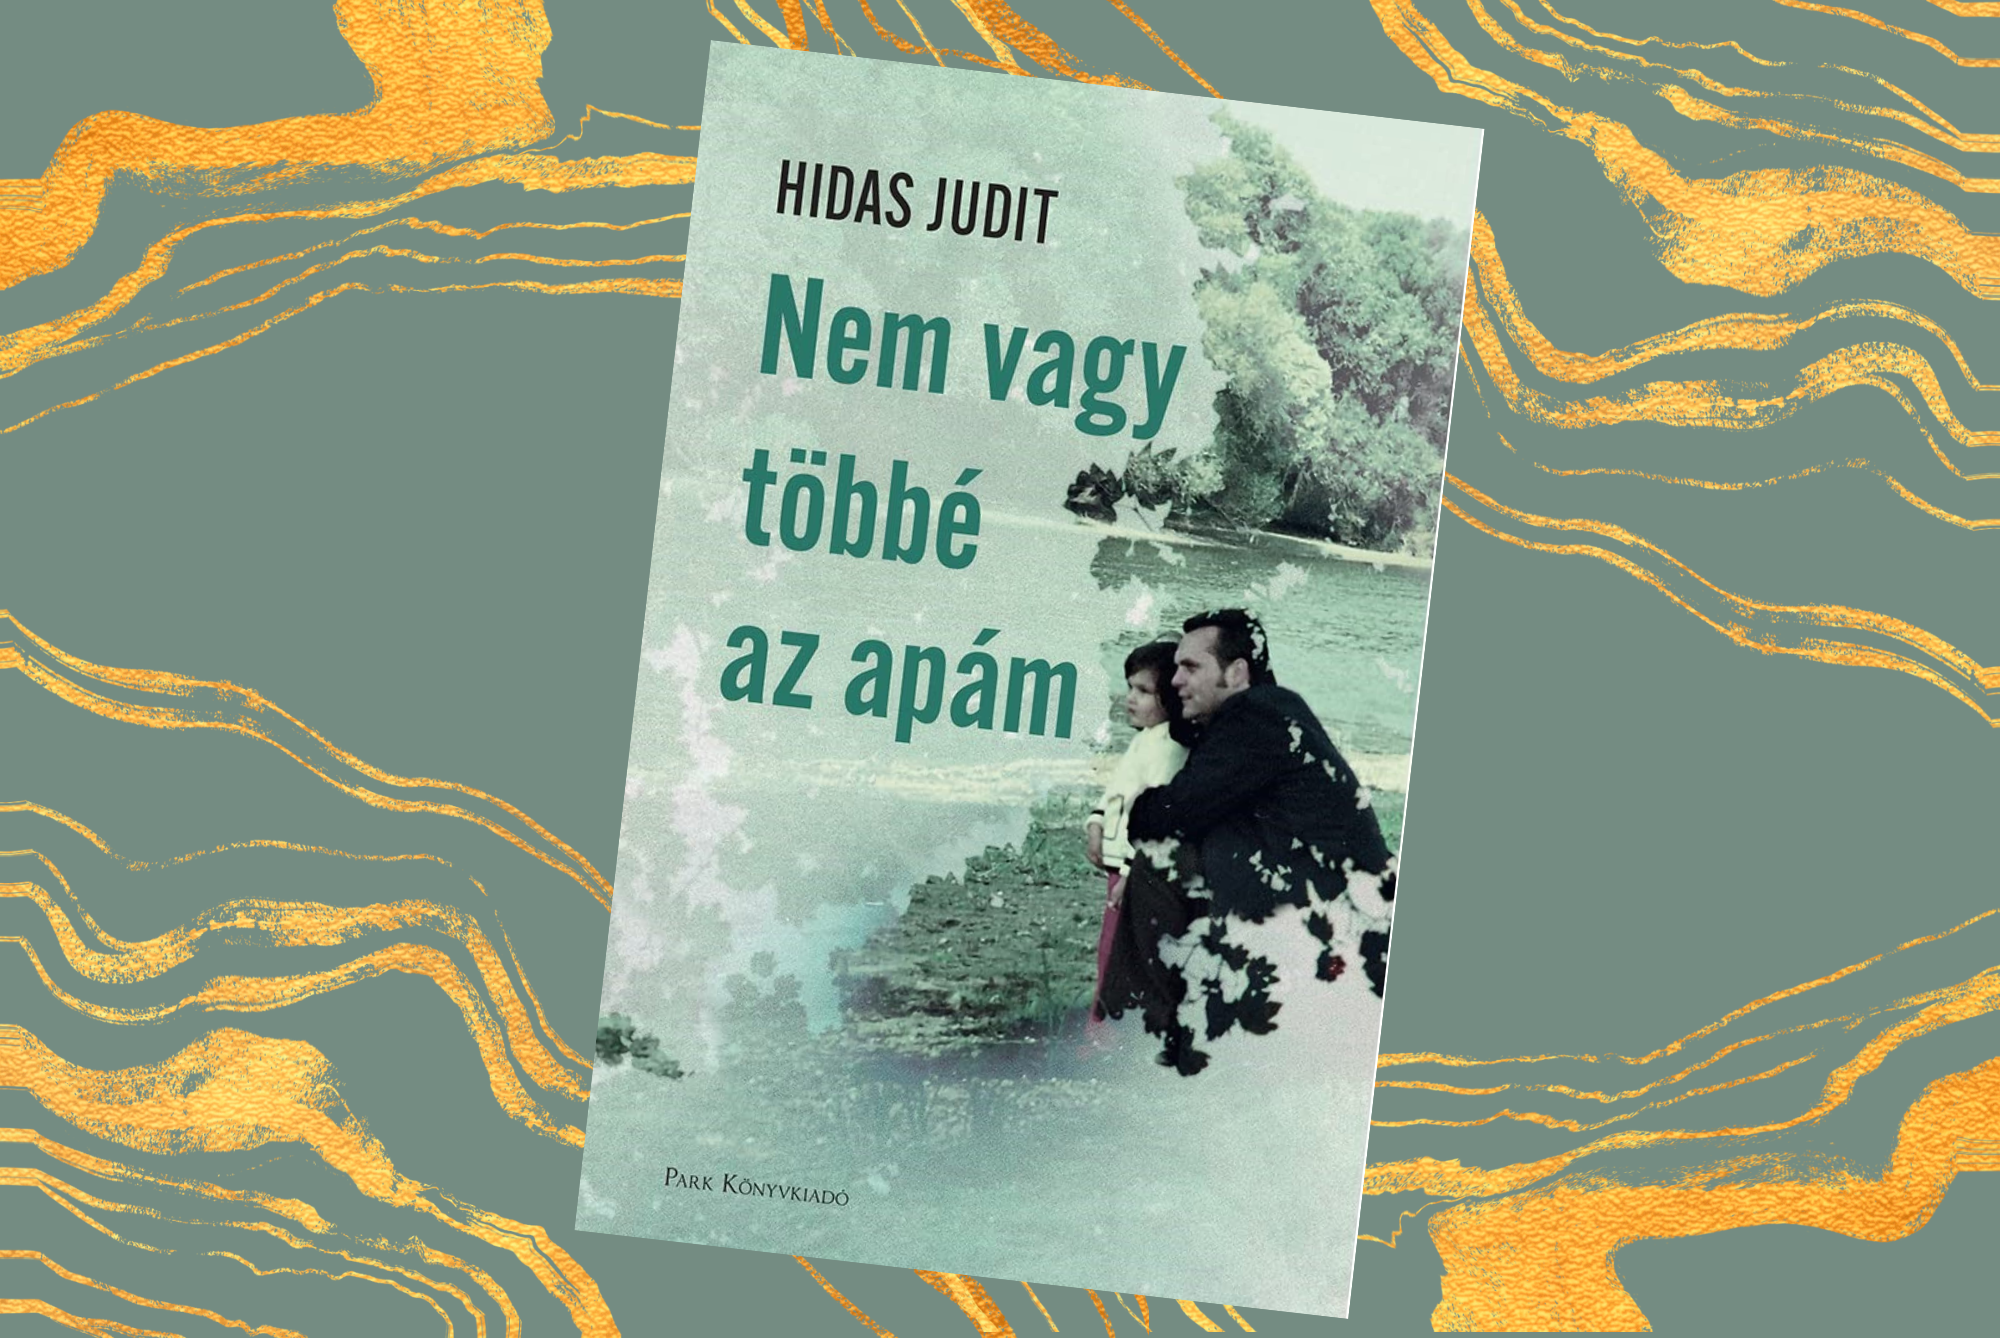 Heti kultkedvenc: Hidas Judit új regénye is a bestseller listánkra került